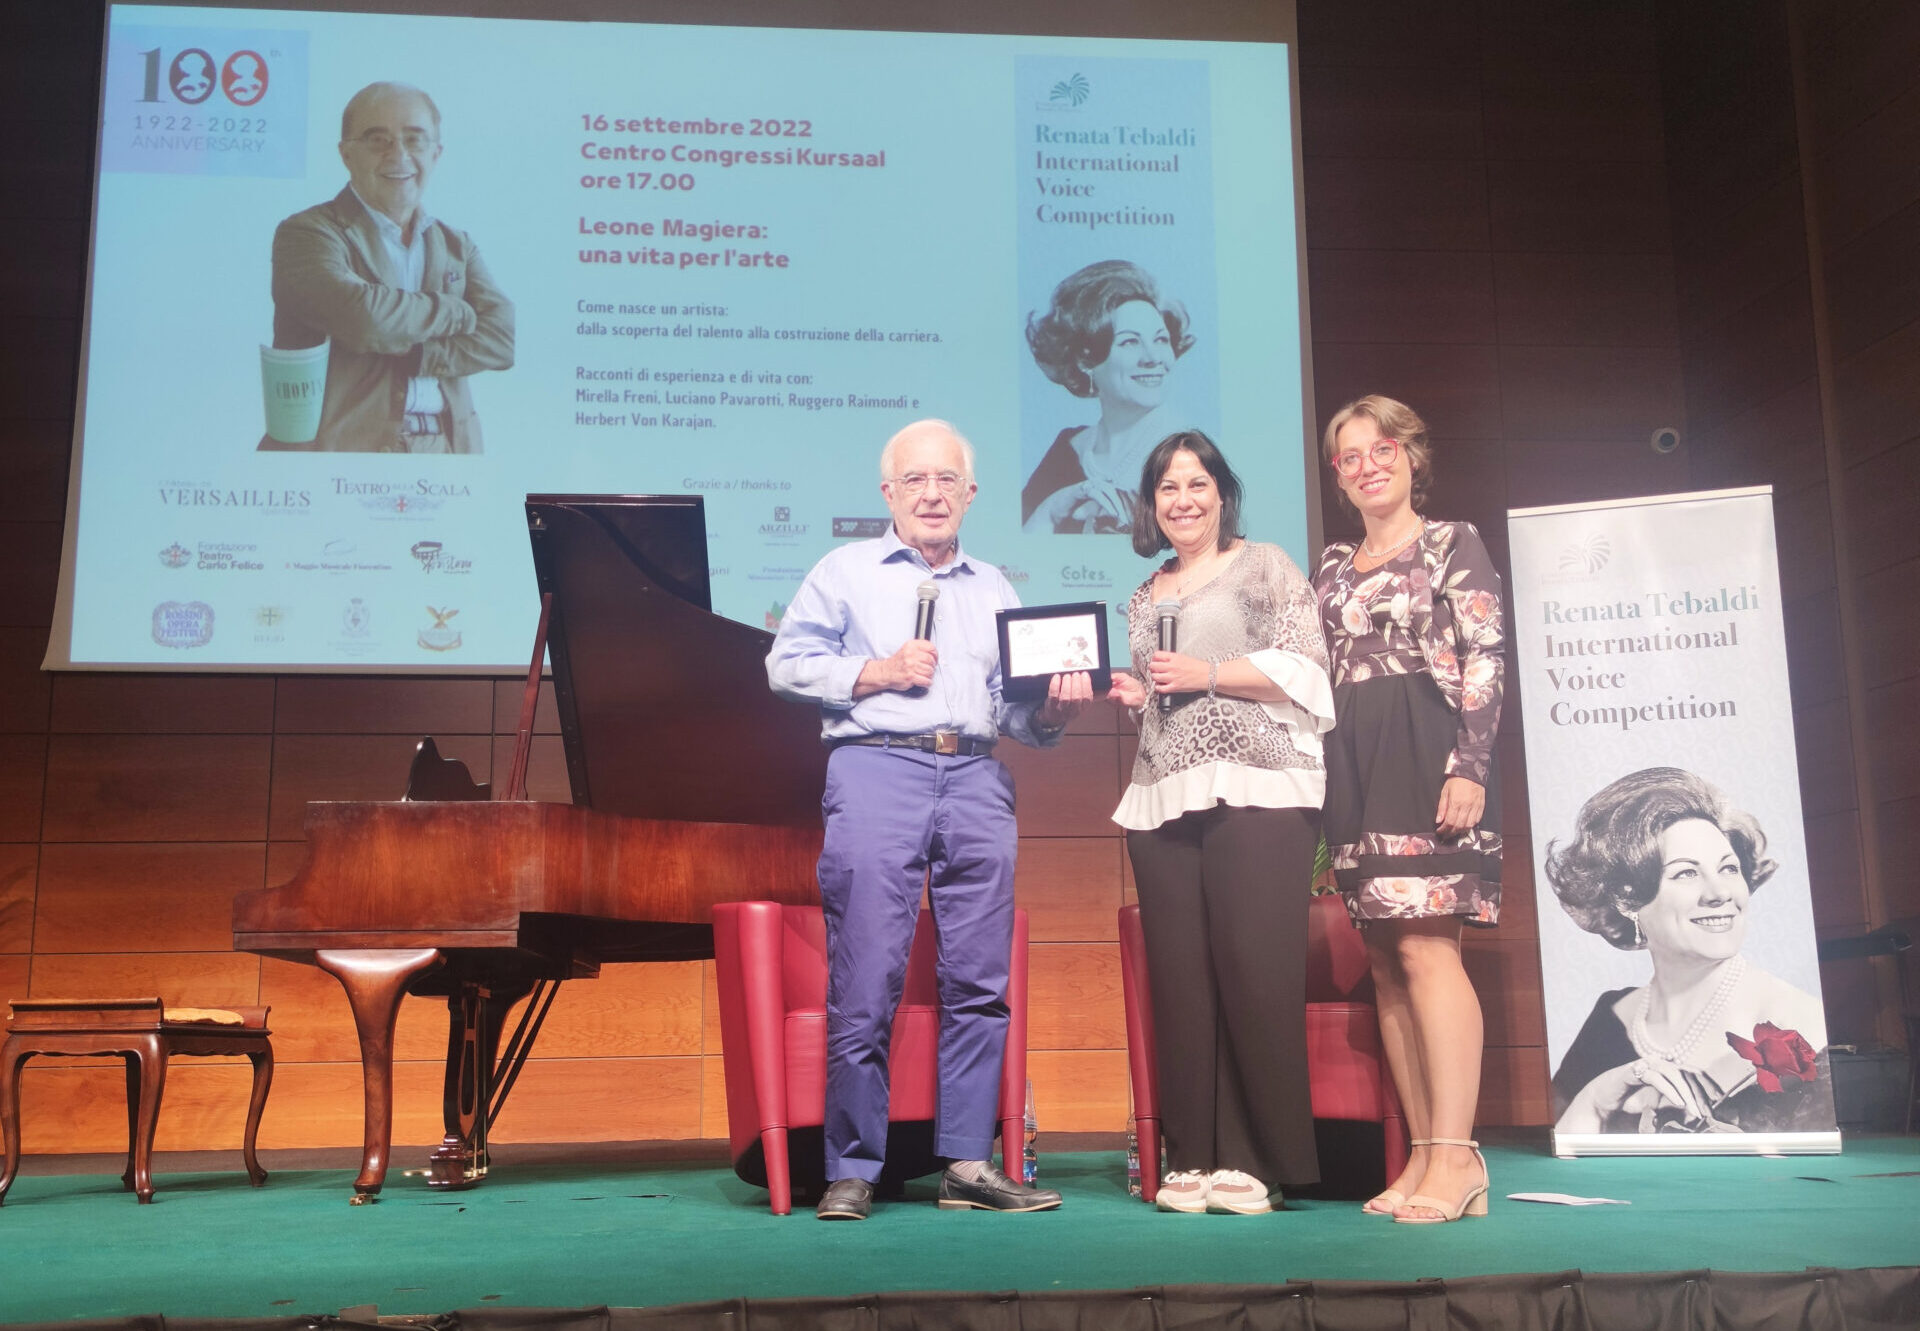 Concorso internazionale di canto “Renata Tebaldi” a San Marino, conferito a Leone Magiera il premio Vissi d’arte 2022